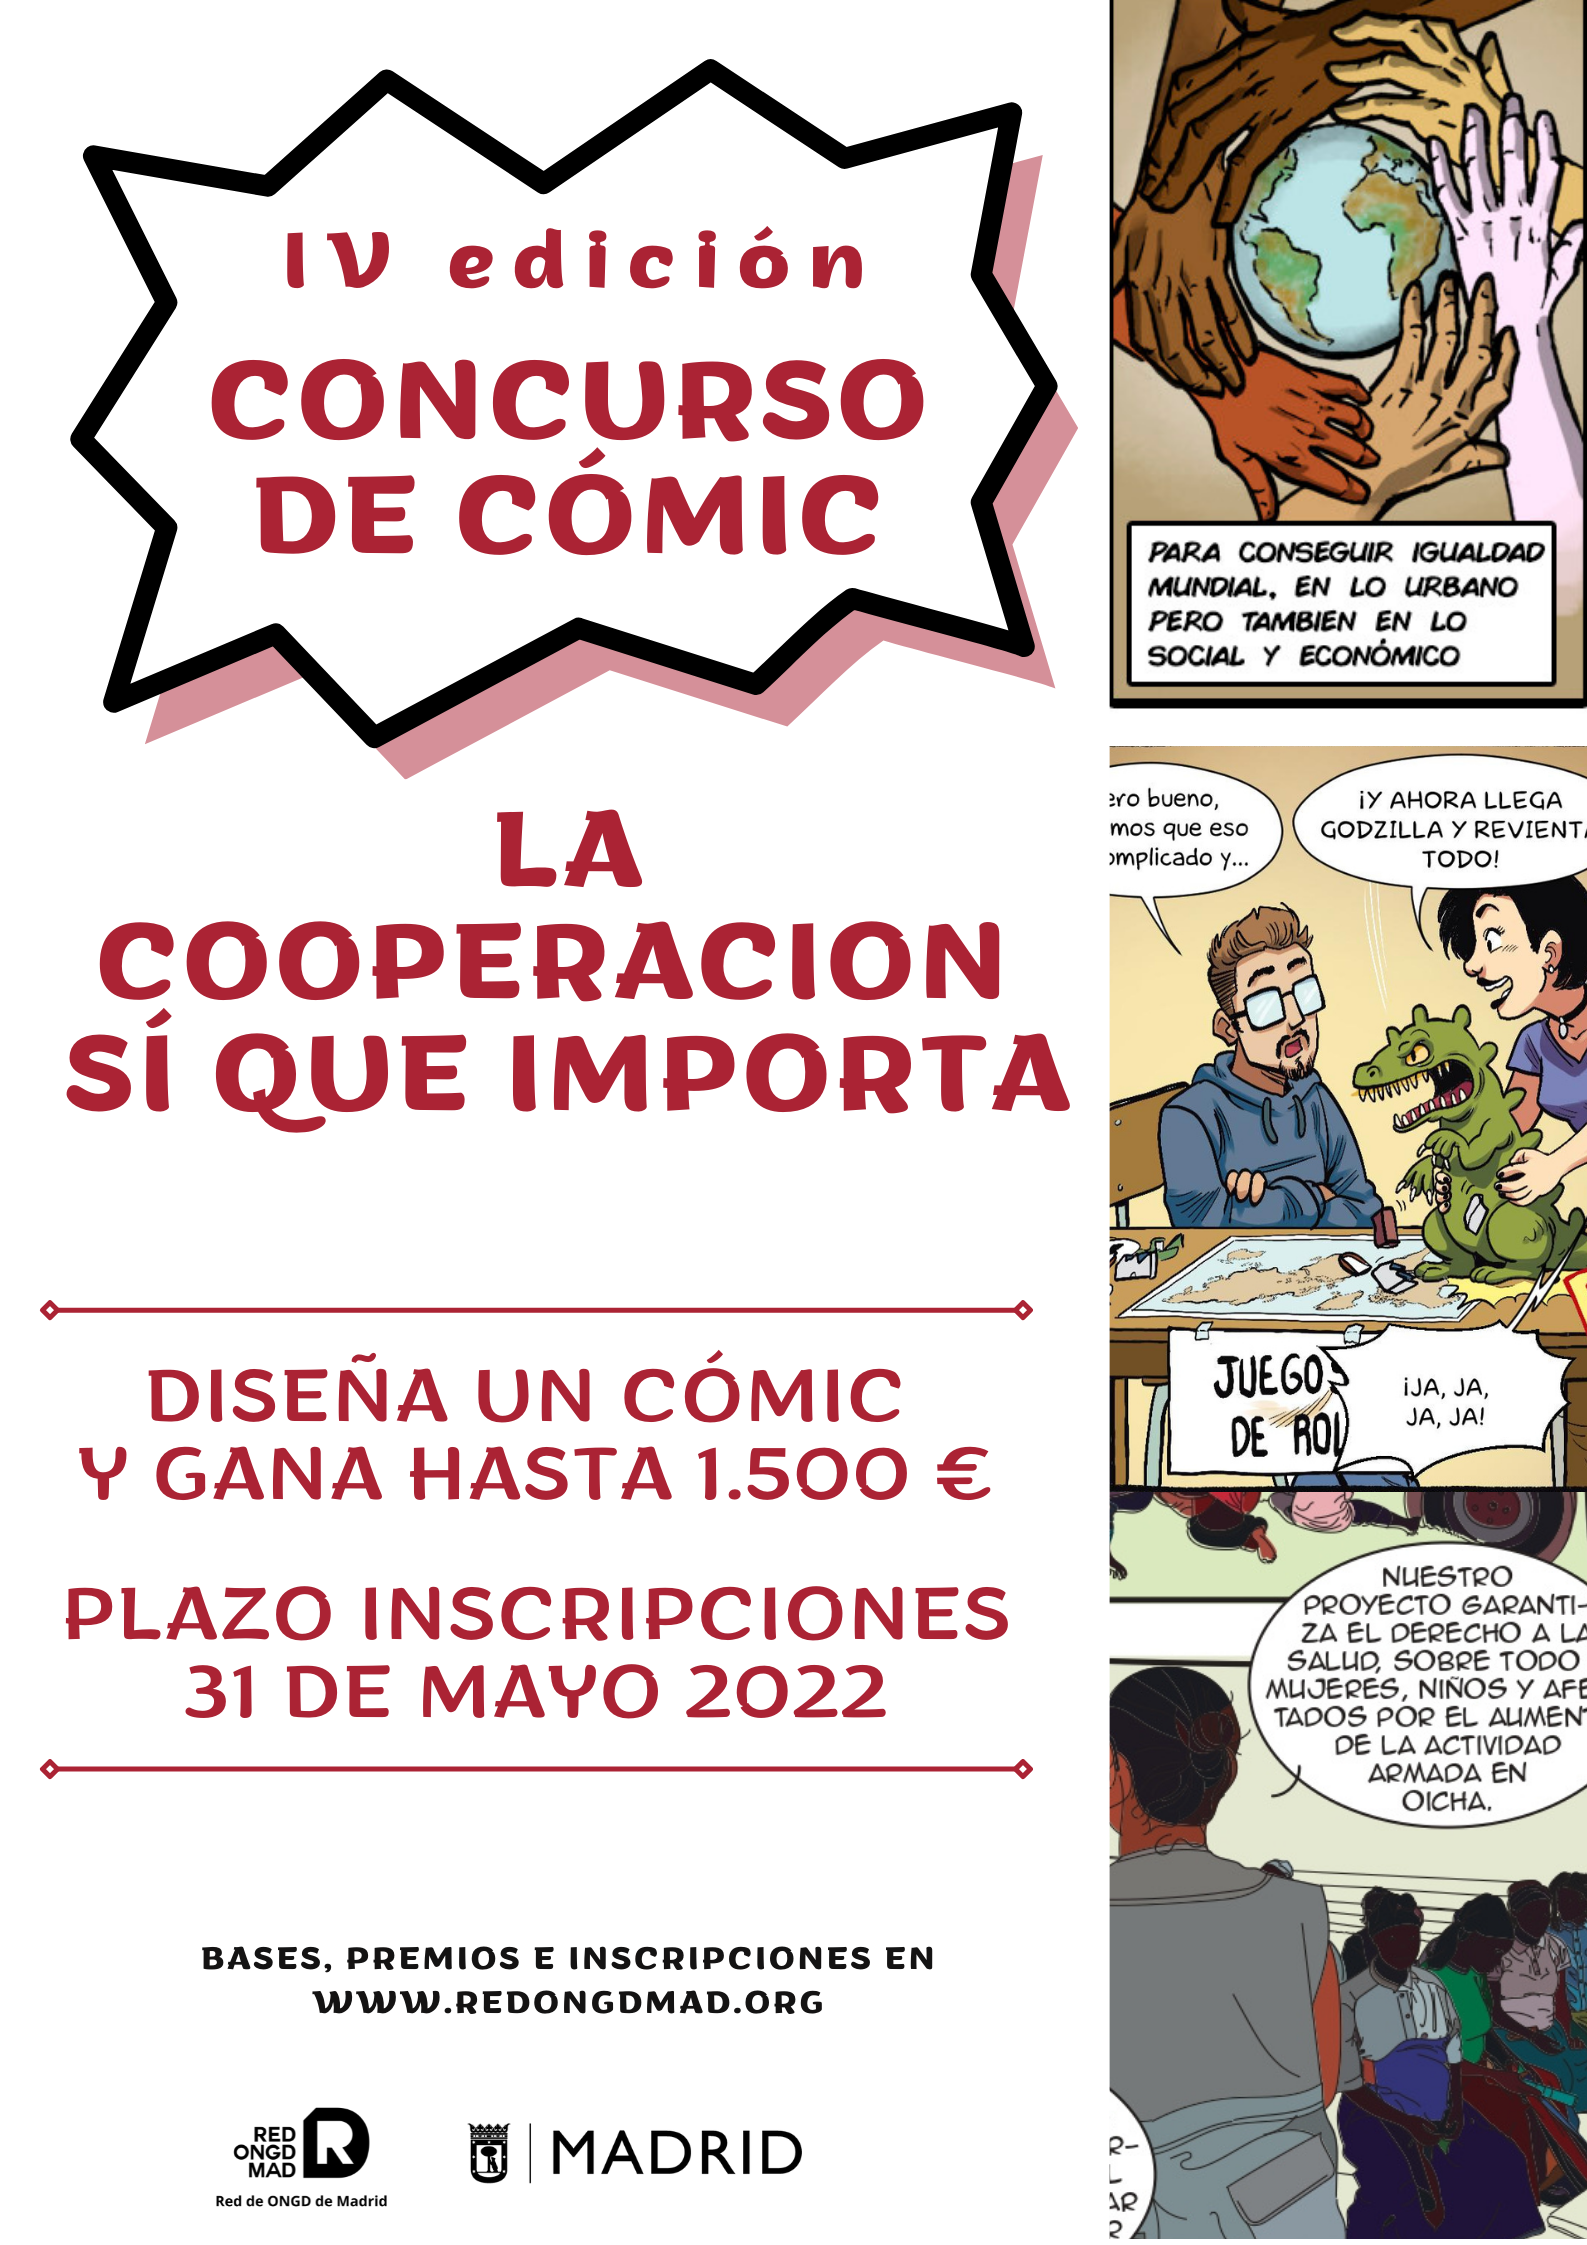 IV Edición del concurso de cómic “La Cooperación sí que importa” 2022